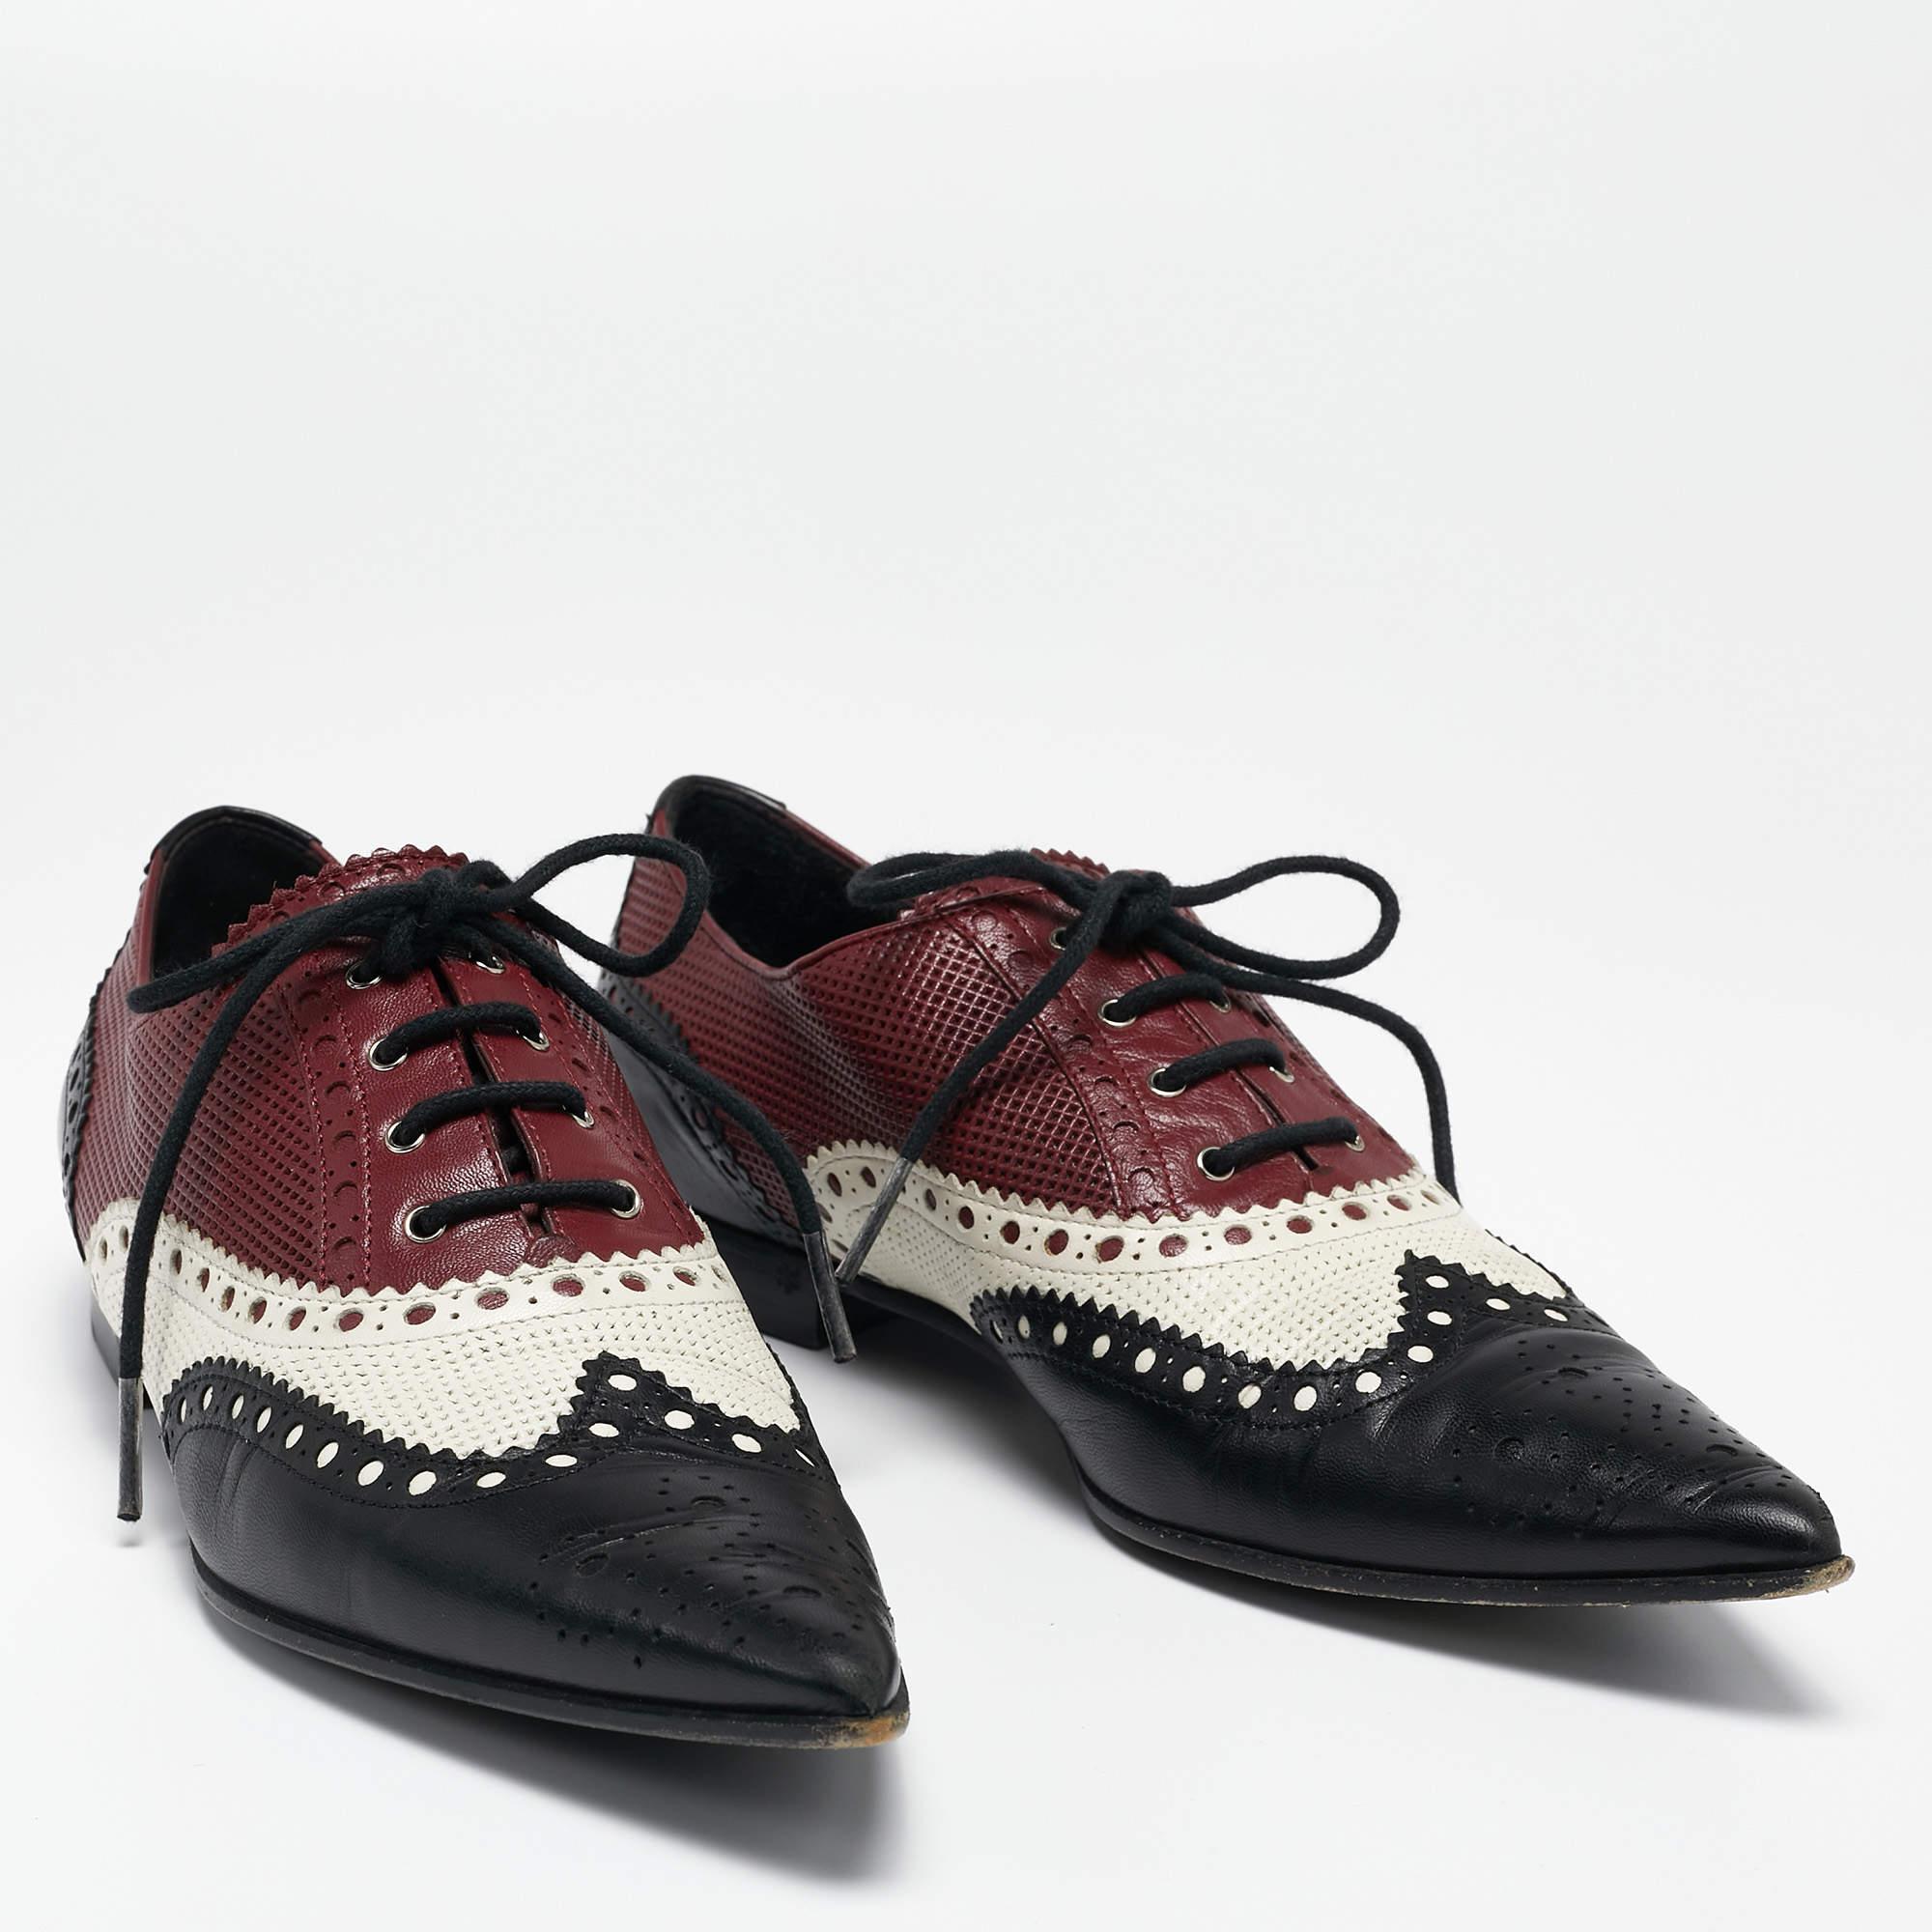 Gucci Multicolor Leather Pointed Toe Brogue Oxford Size 36 In Fair Condition For Sale In Dubai, Al Qouz 2